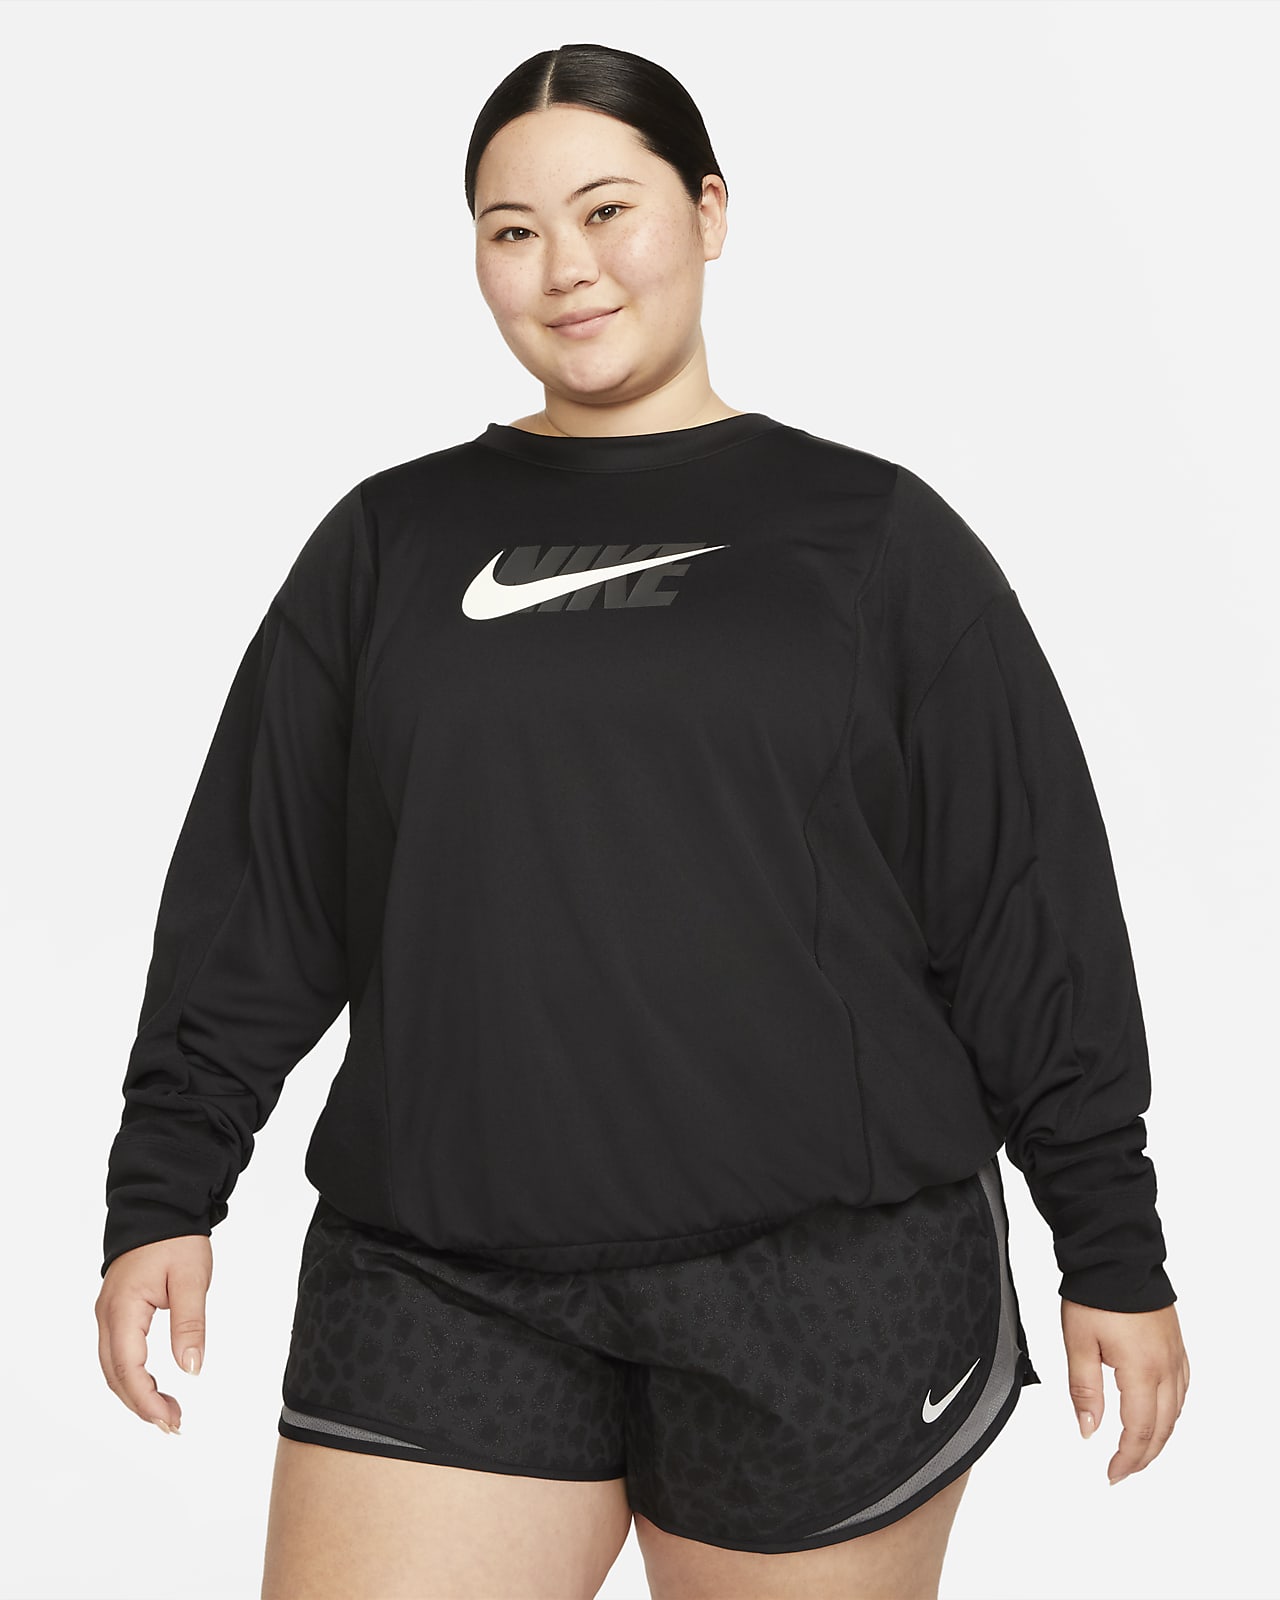 Женская беговая толстовка Nike Dri-FIT Icon Clash (большие размеры)